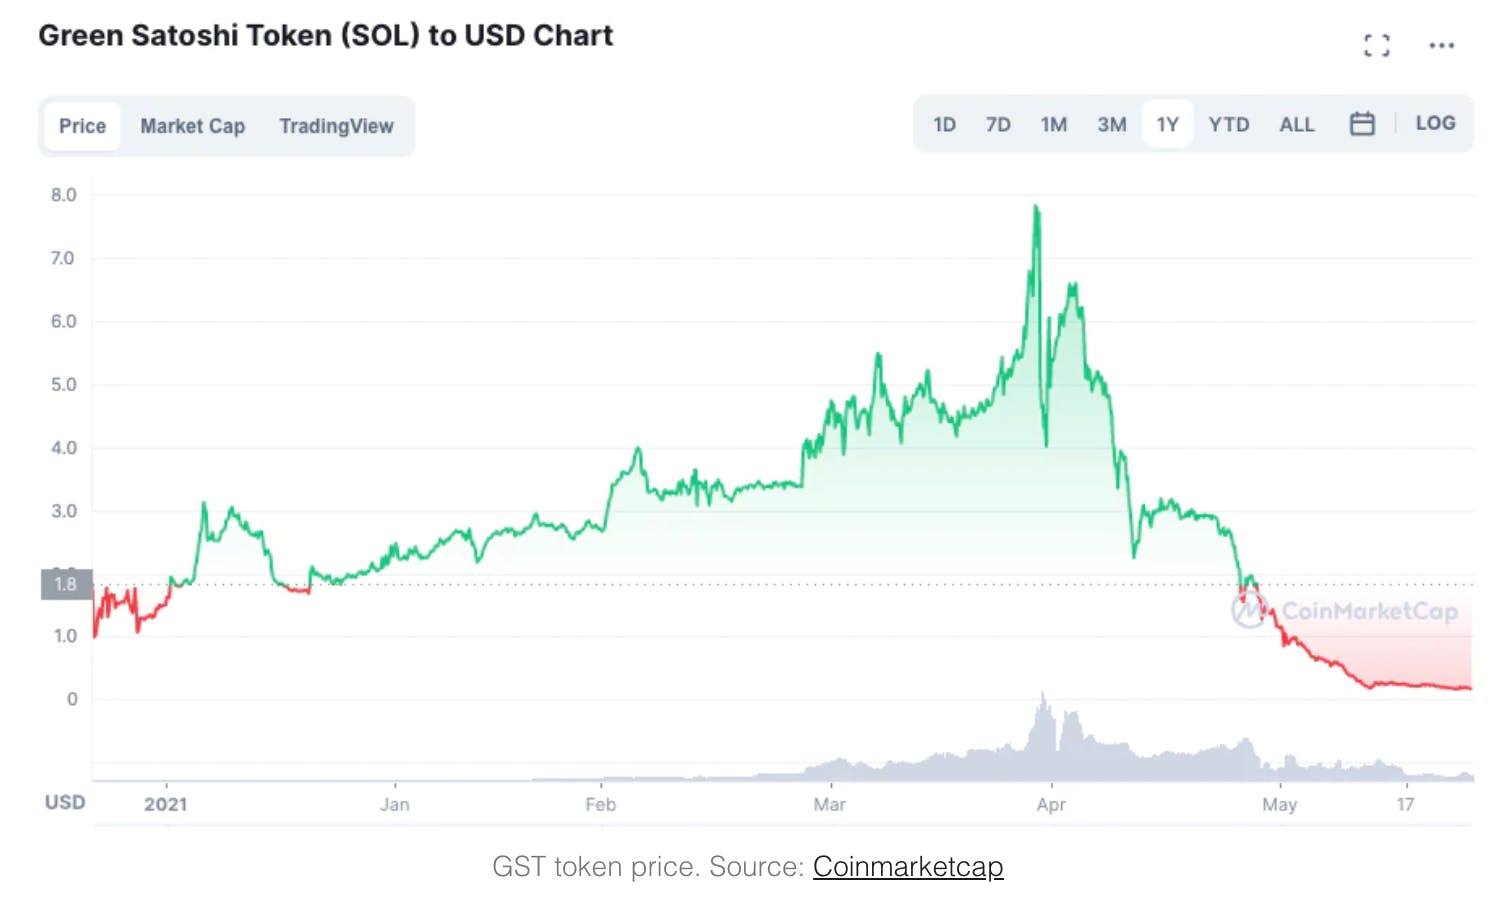 GST token price. Source: Coinmarketcap